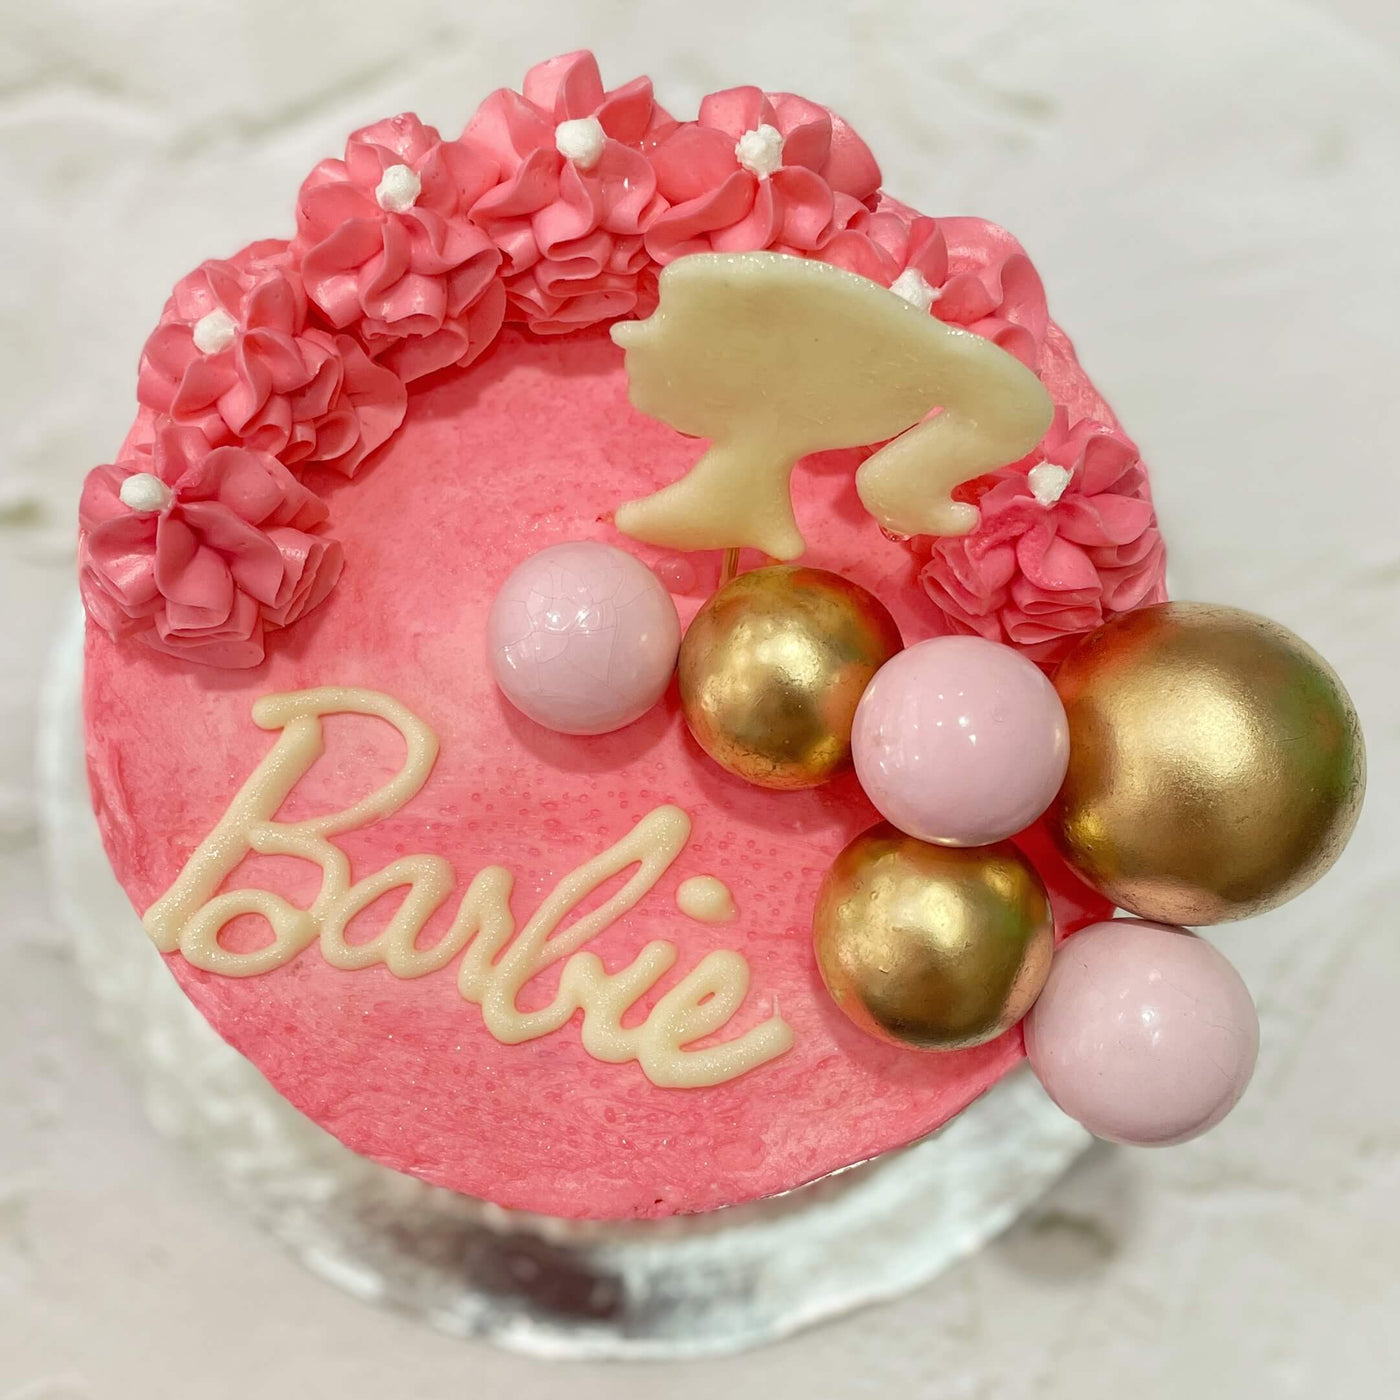 Barbie Birthday Cake - Milly Cupcakes